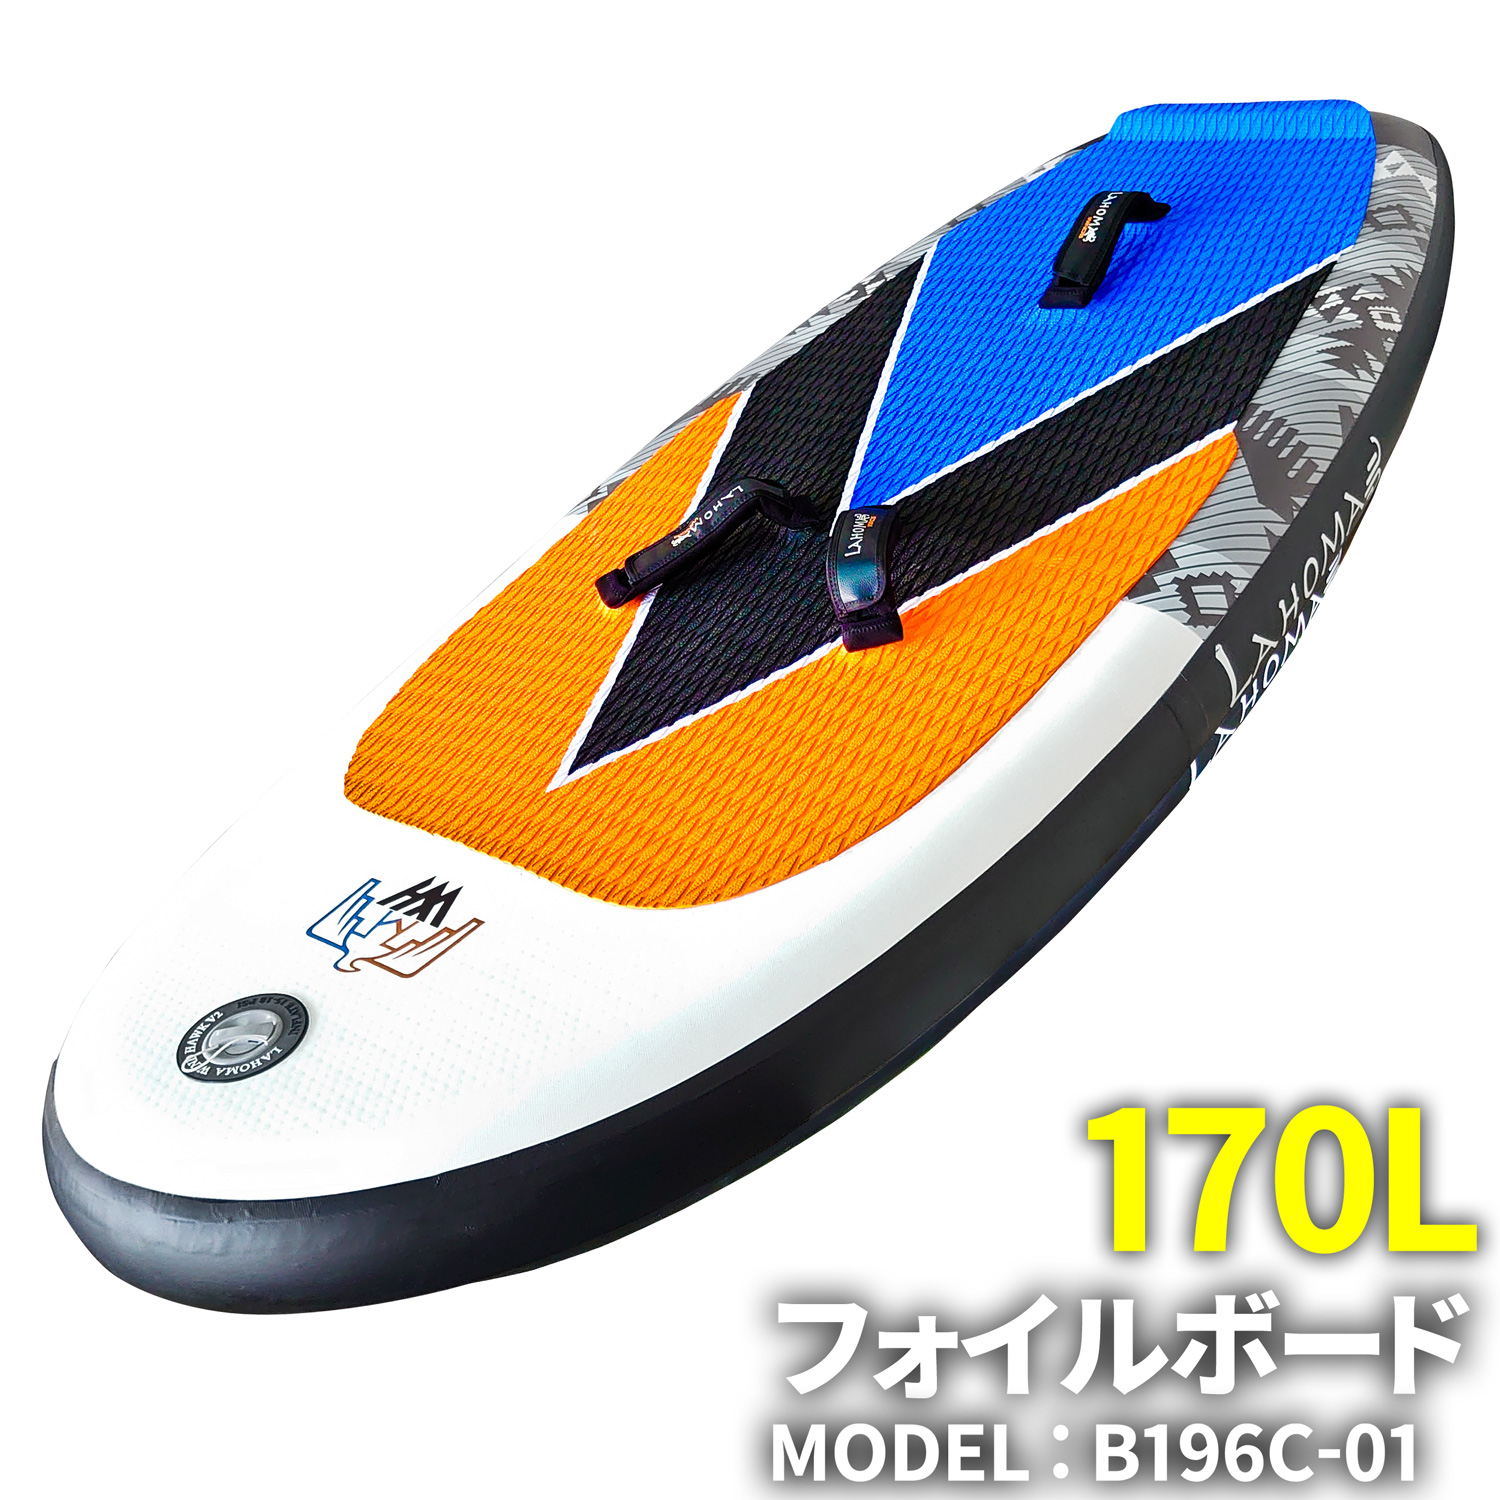 【楽天市場】ウイングサーフィン用 フォイルボード 【 B166C-01 